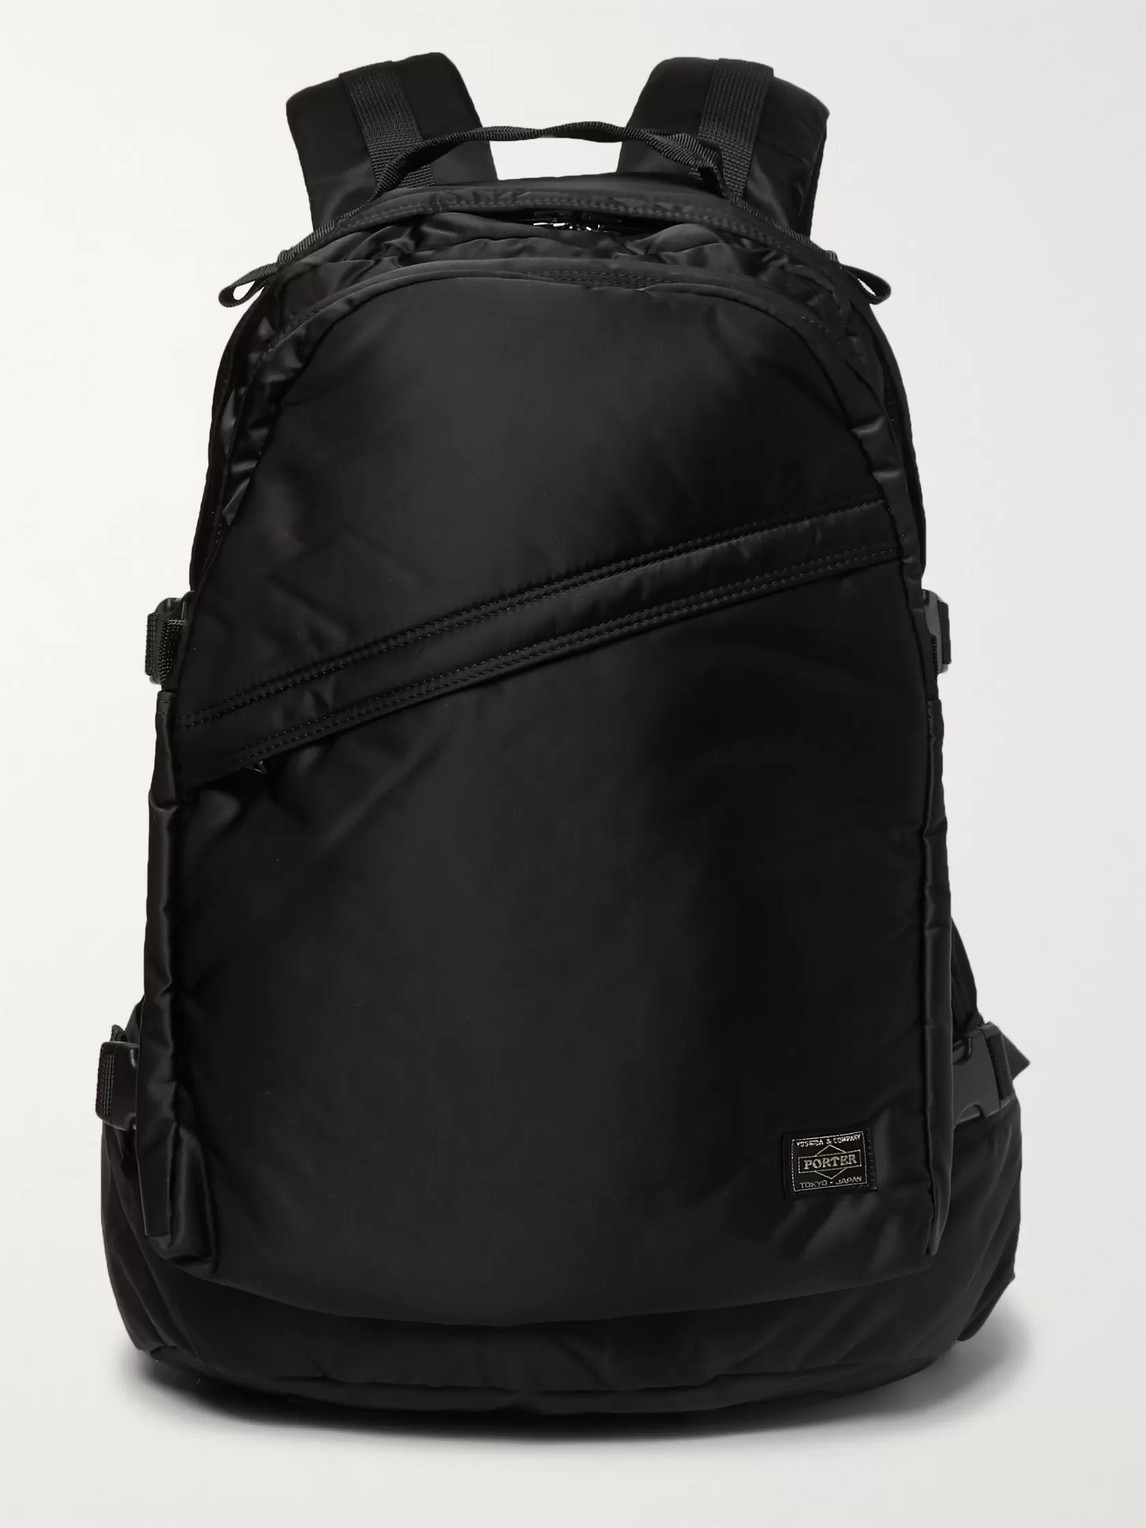 Porter-yoshida & Co Tanker Padded Shell Backpack In Black